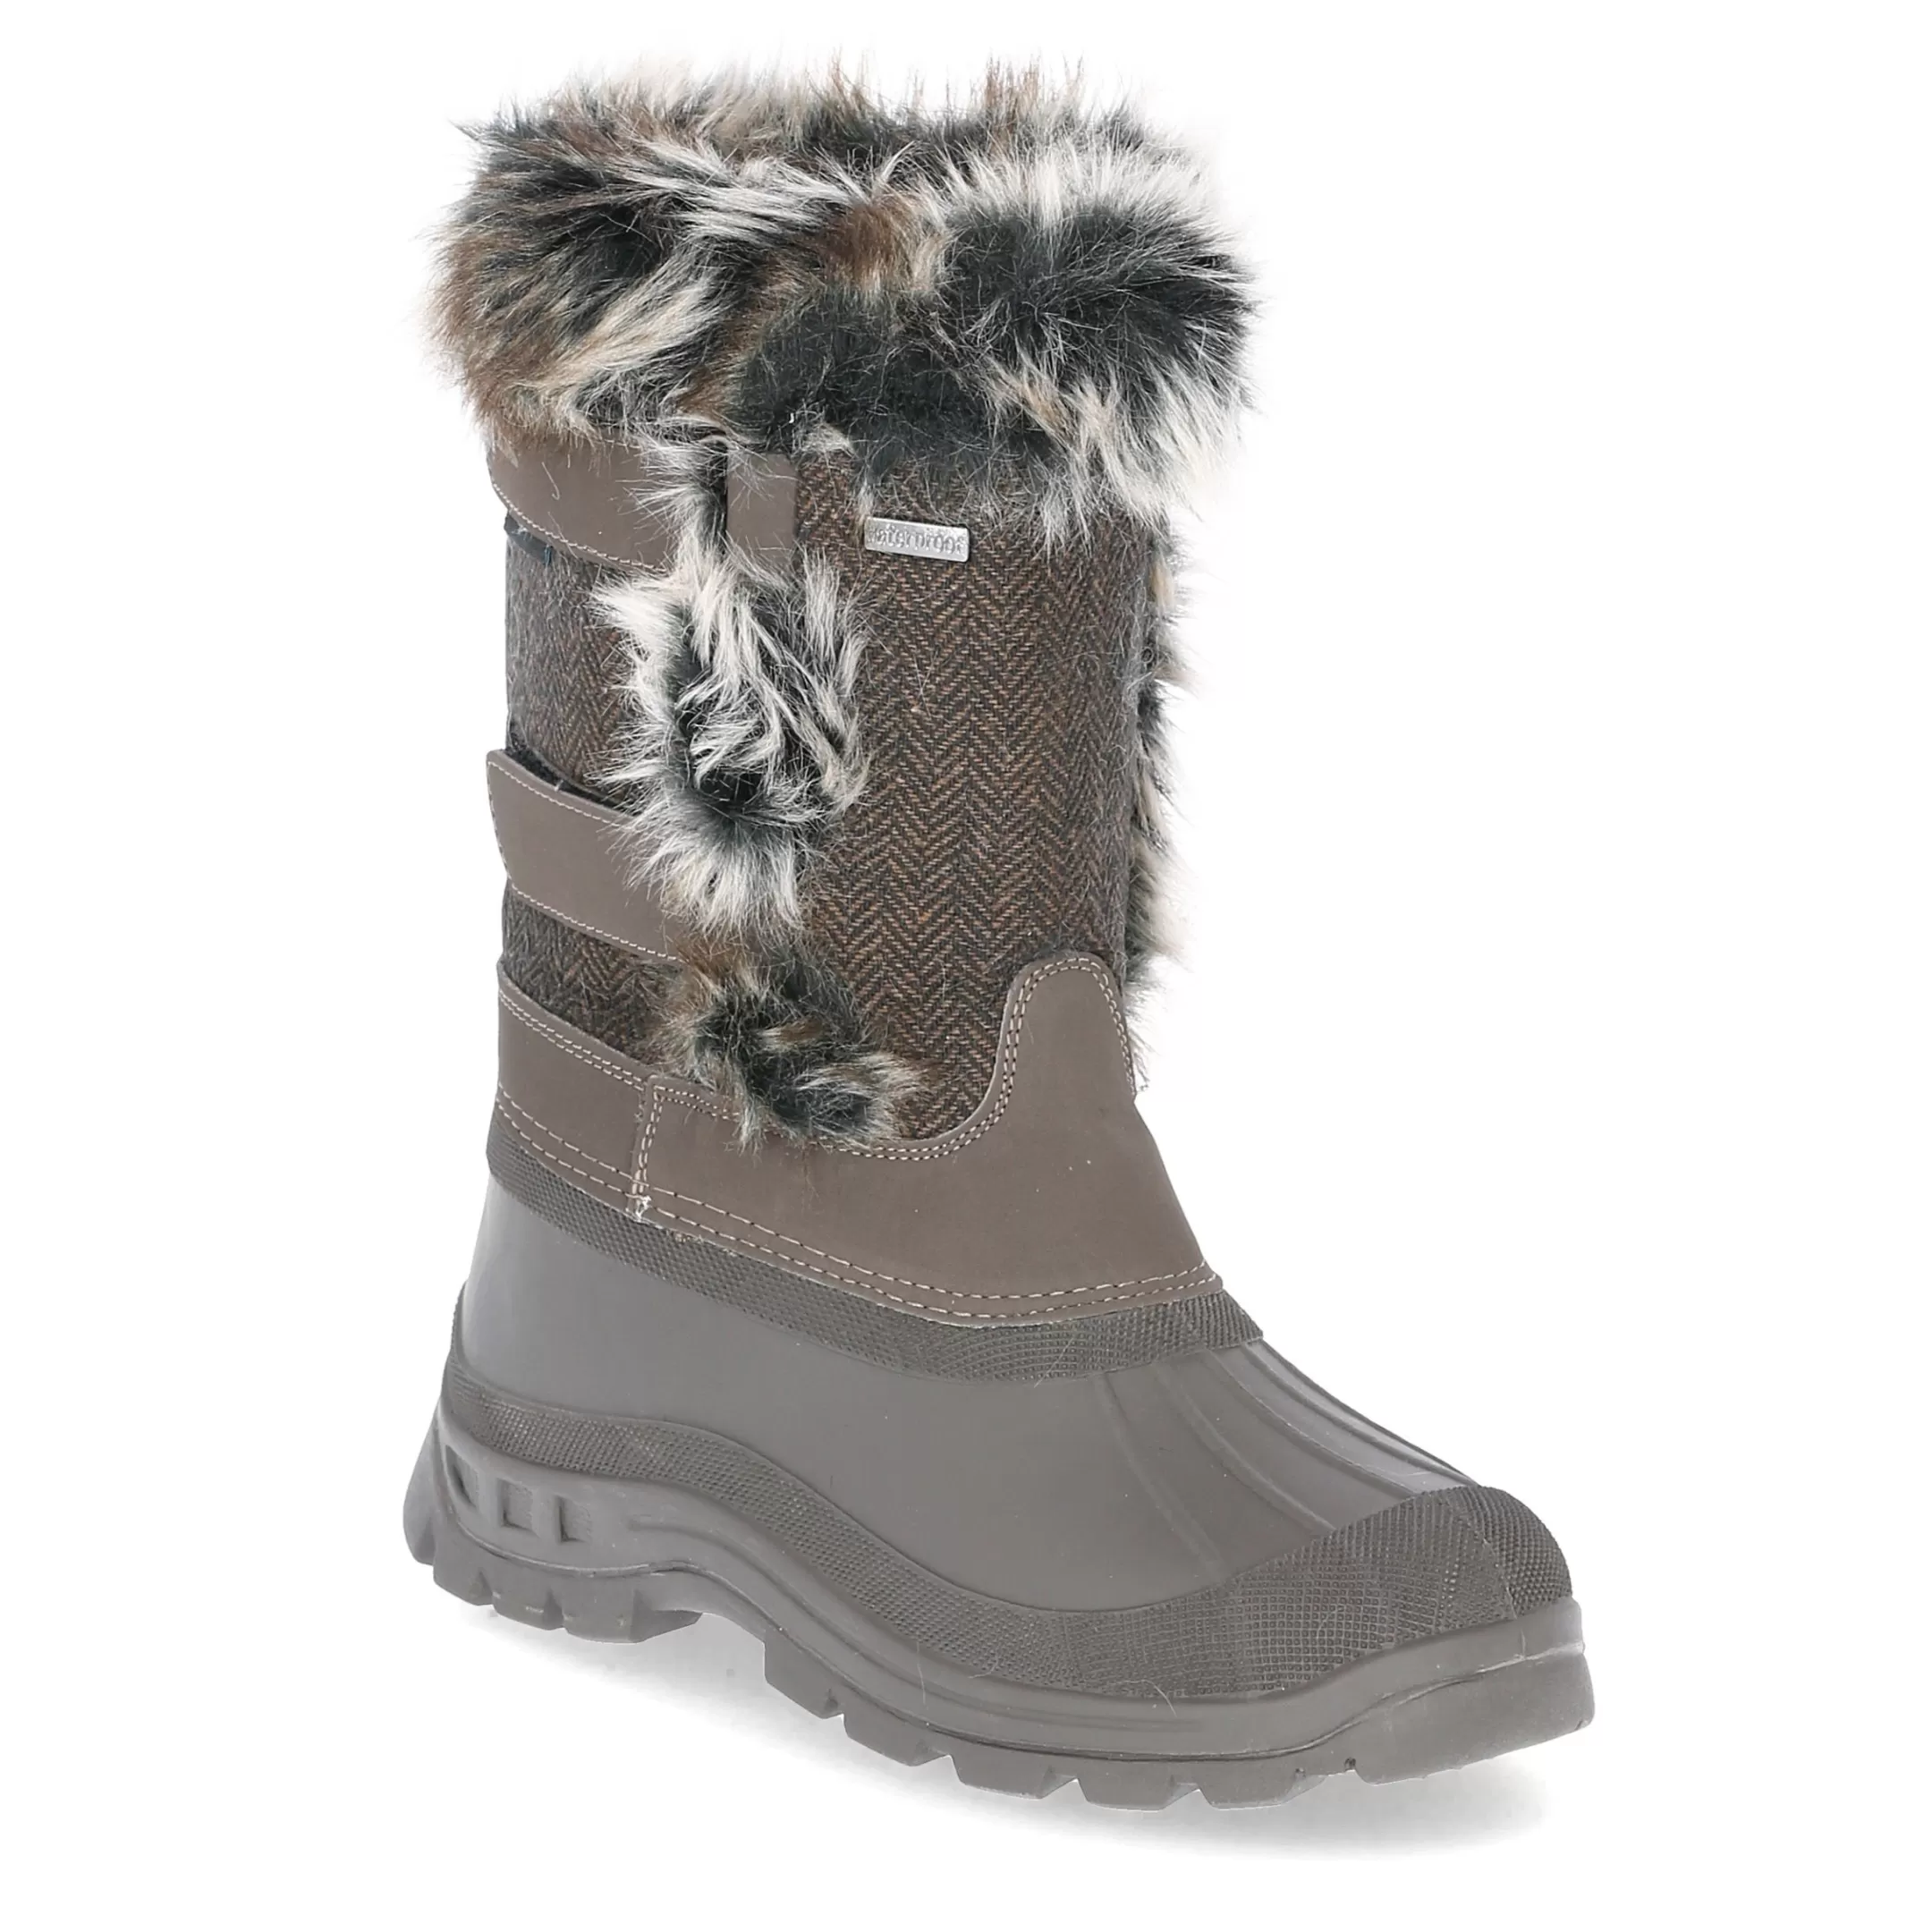 Womens Waterproof Snow Boots Brace | Trespass Online